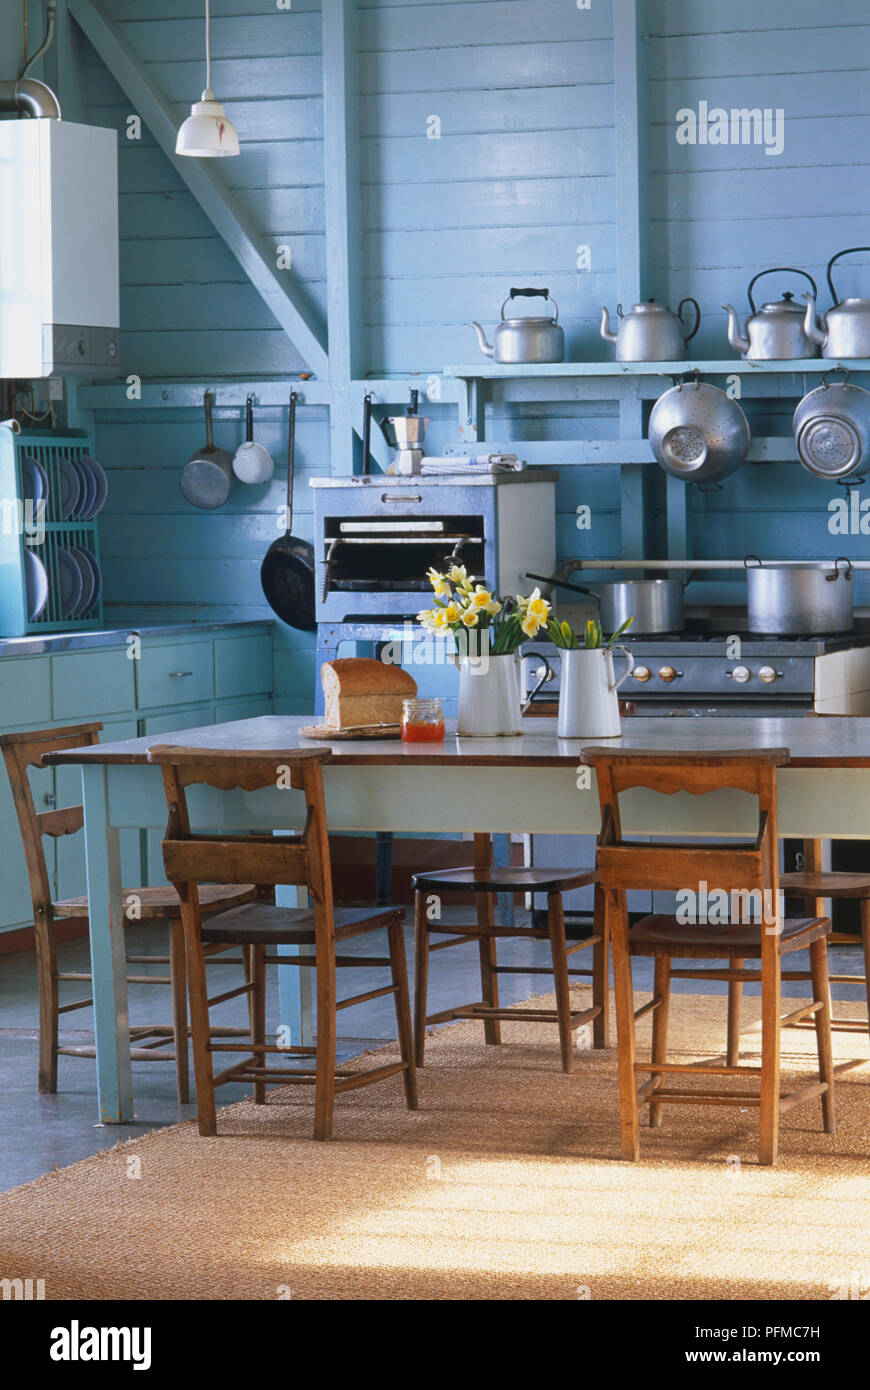 Altmodische Küche mit Edelstahl Töpfe und Pfannen, Wasserkocher, Tisch und Stühlen und einem modernen Edelstahl Gastronomie Backofen. Stockfoto